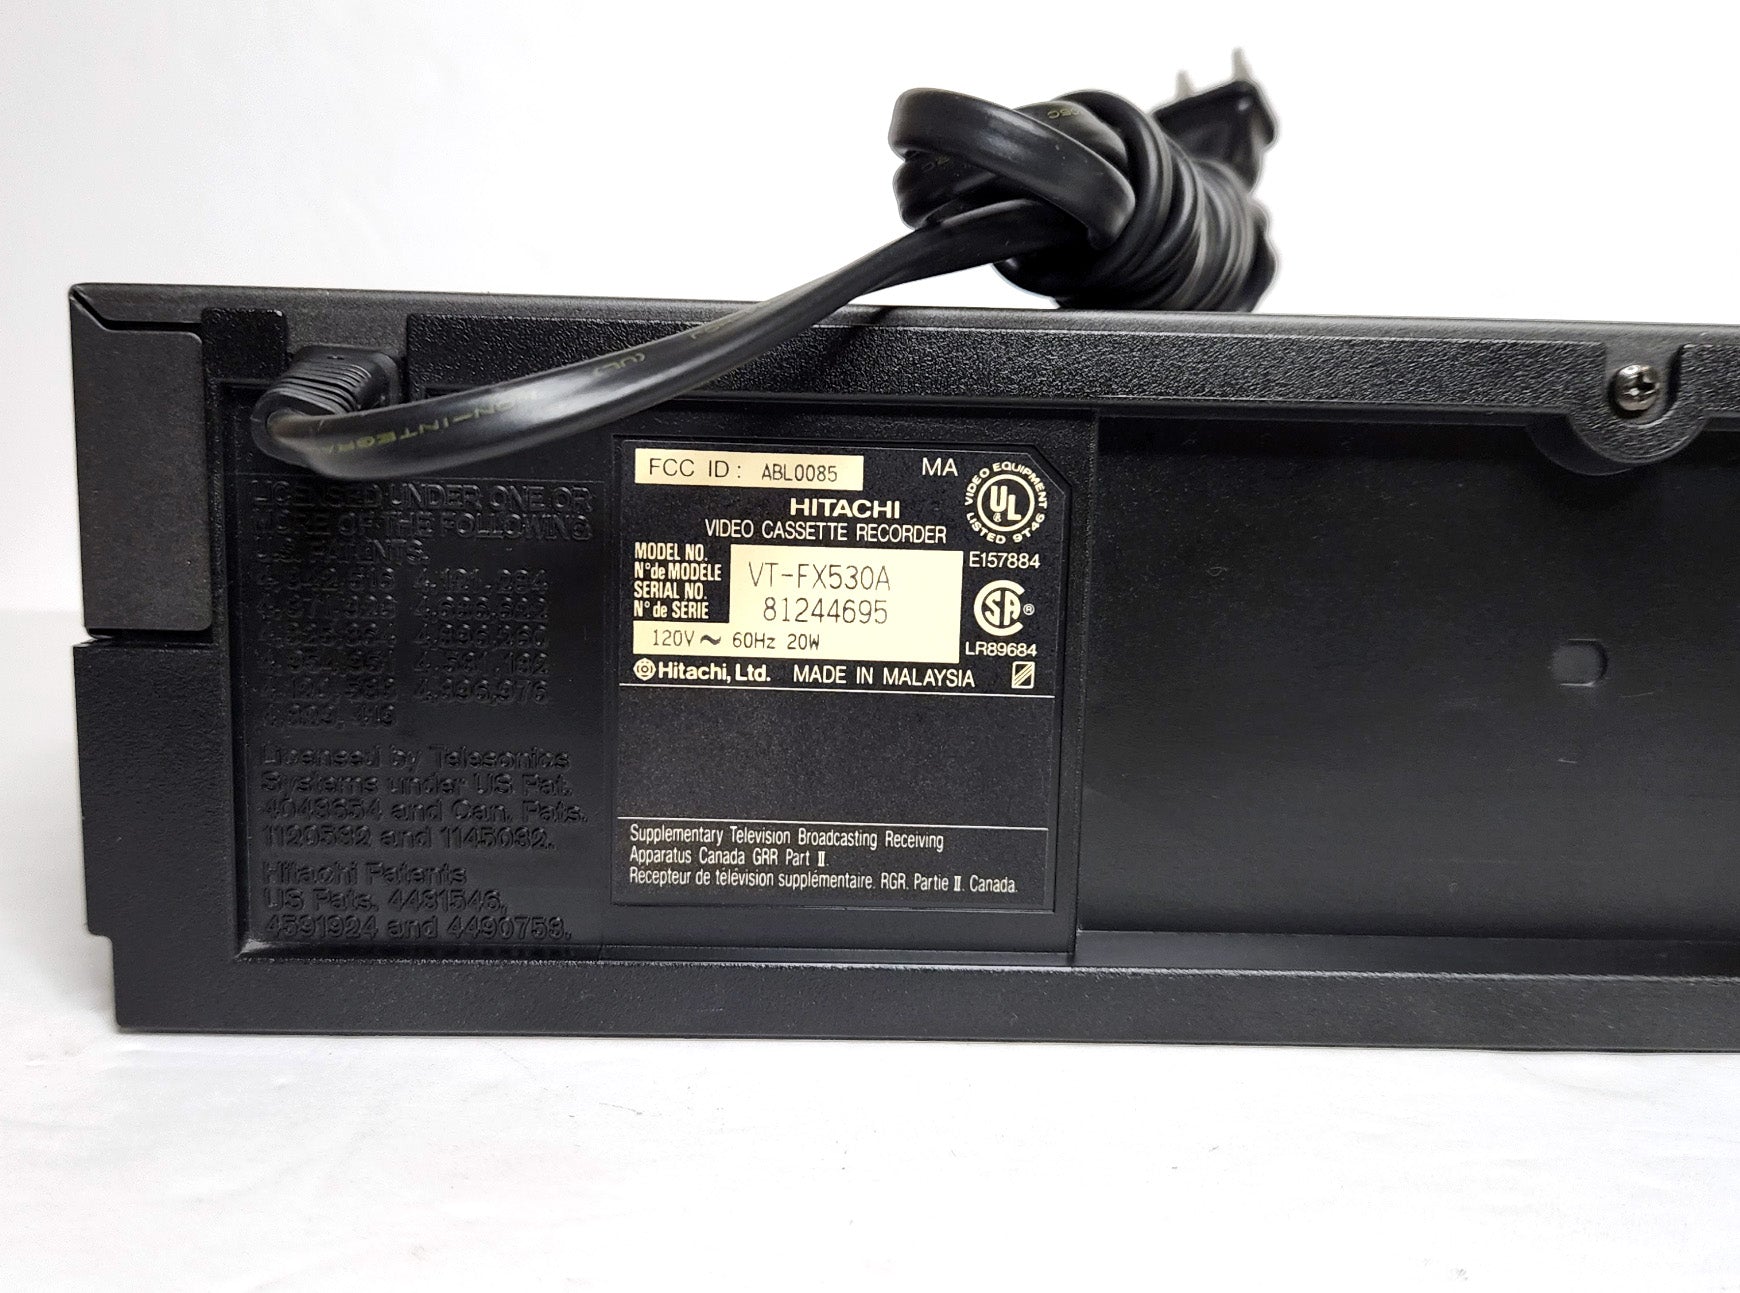 Hitachi VT-FX530A VCR - Label